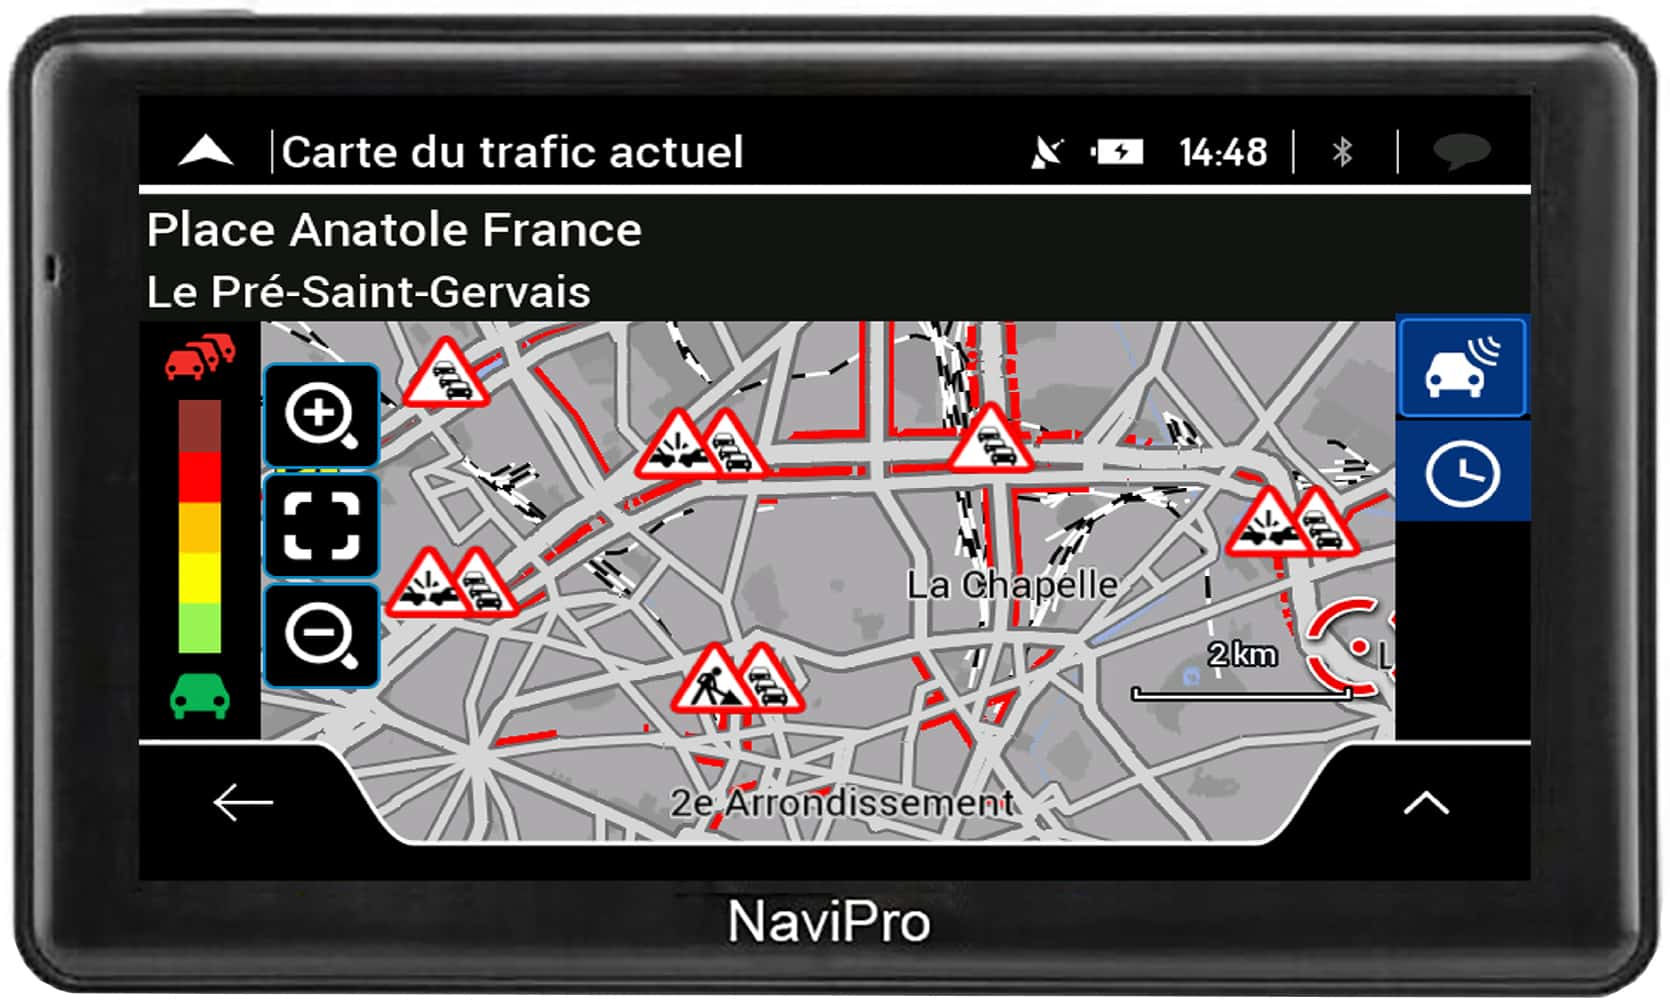 NaviPro – ACTIVE CAMION – NaviPro GPS